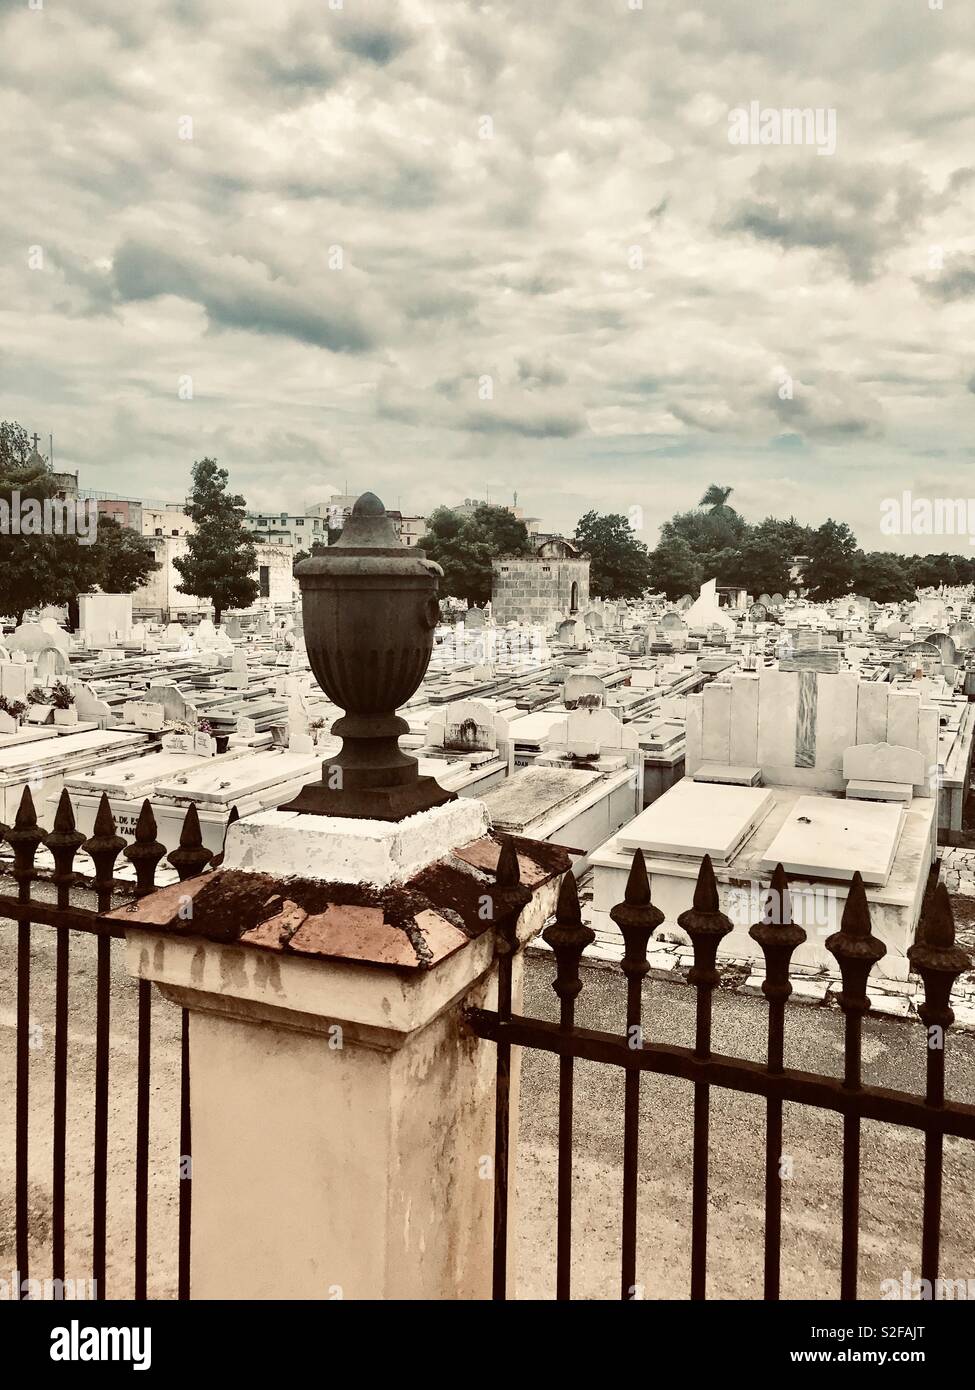 Cimitero di Colon è uno dei più importanti cimiteri in tutto il mondo ed è uno dei più importanti in America Latina nella storica e architettura, Colon è un cimitero cattolico. Foto Stock